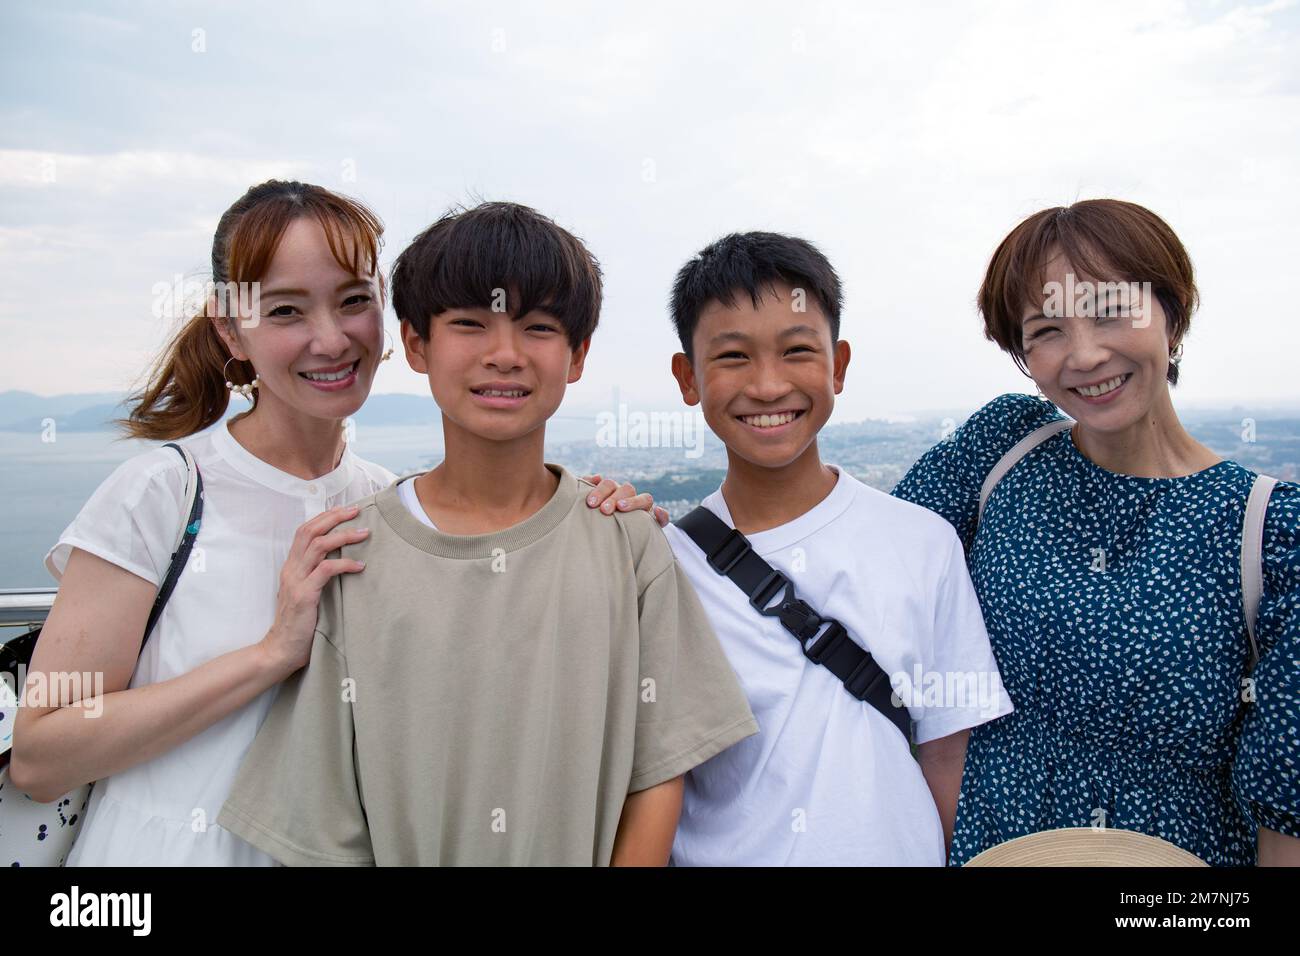 Cuatro japoneses en una excursión, dos mujeres maduras y dos niños de 13 años, en una fila, en una plataforma de observación. Foto de stock